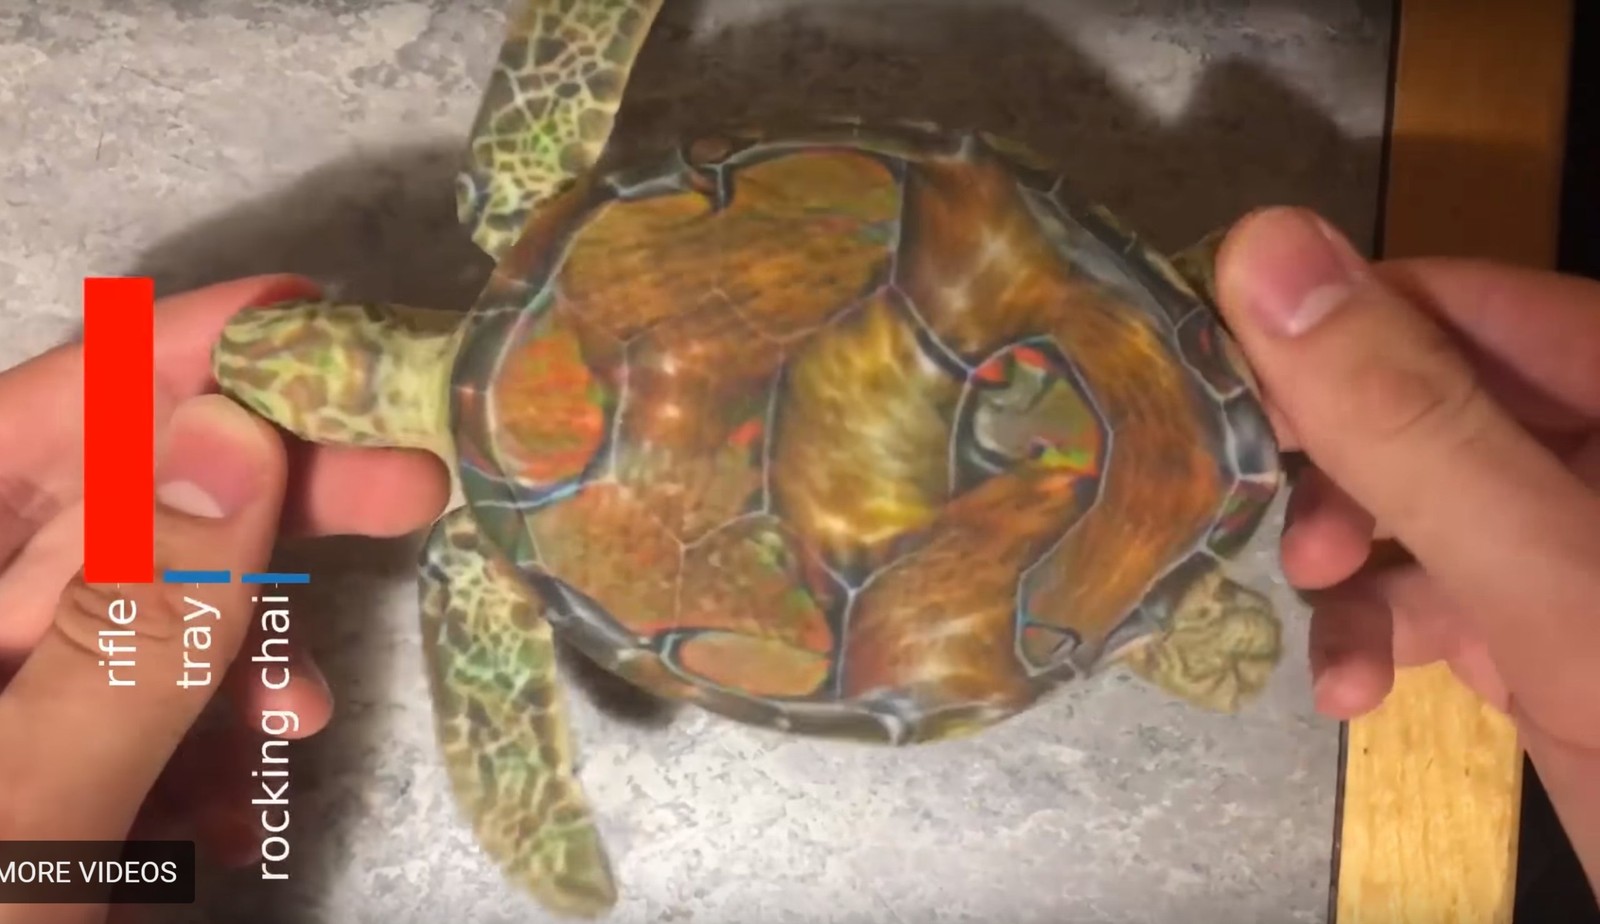 Żółw rozpoznany jako karabin
